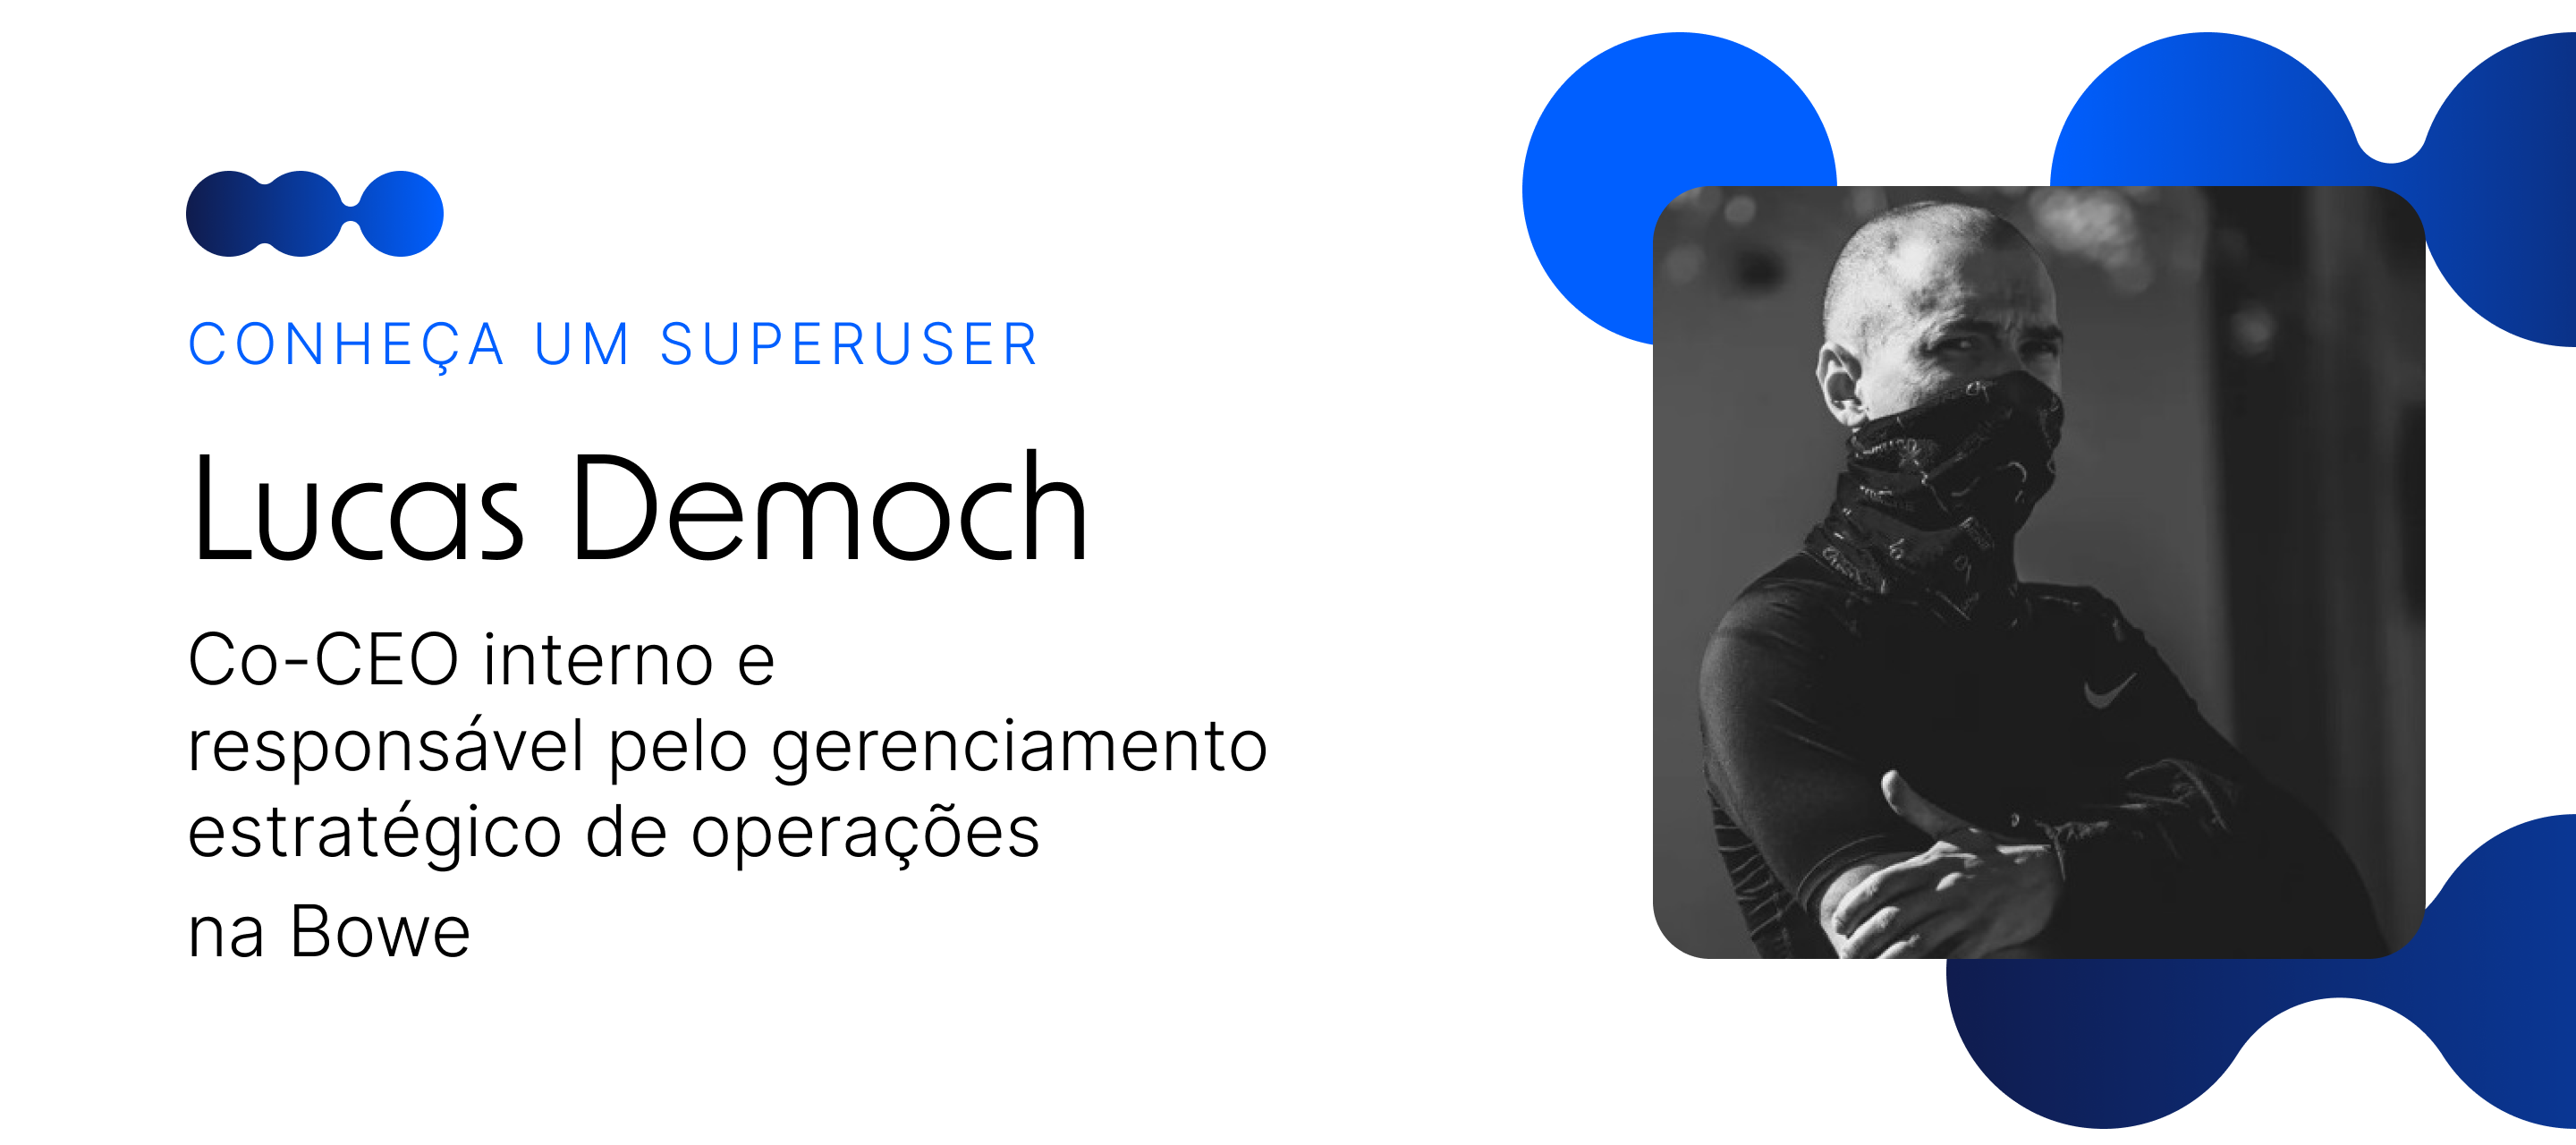 🎙 Conheça um Superuser - Lucas Democh